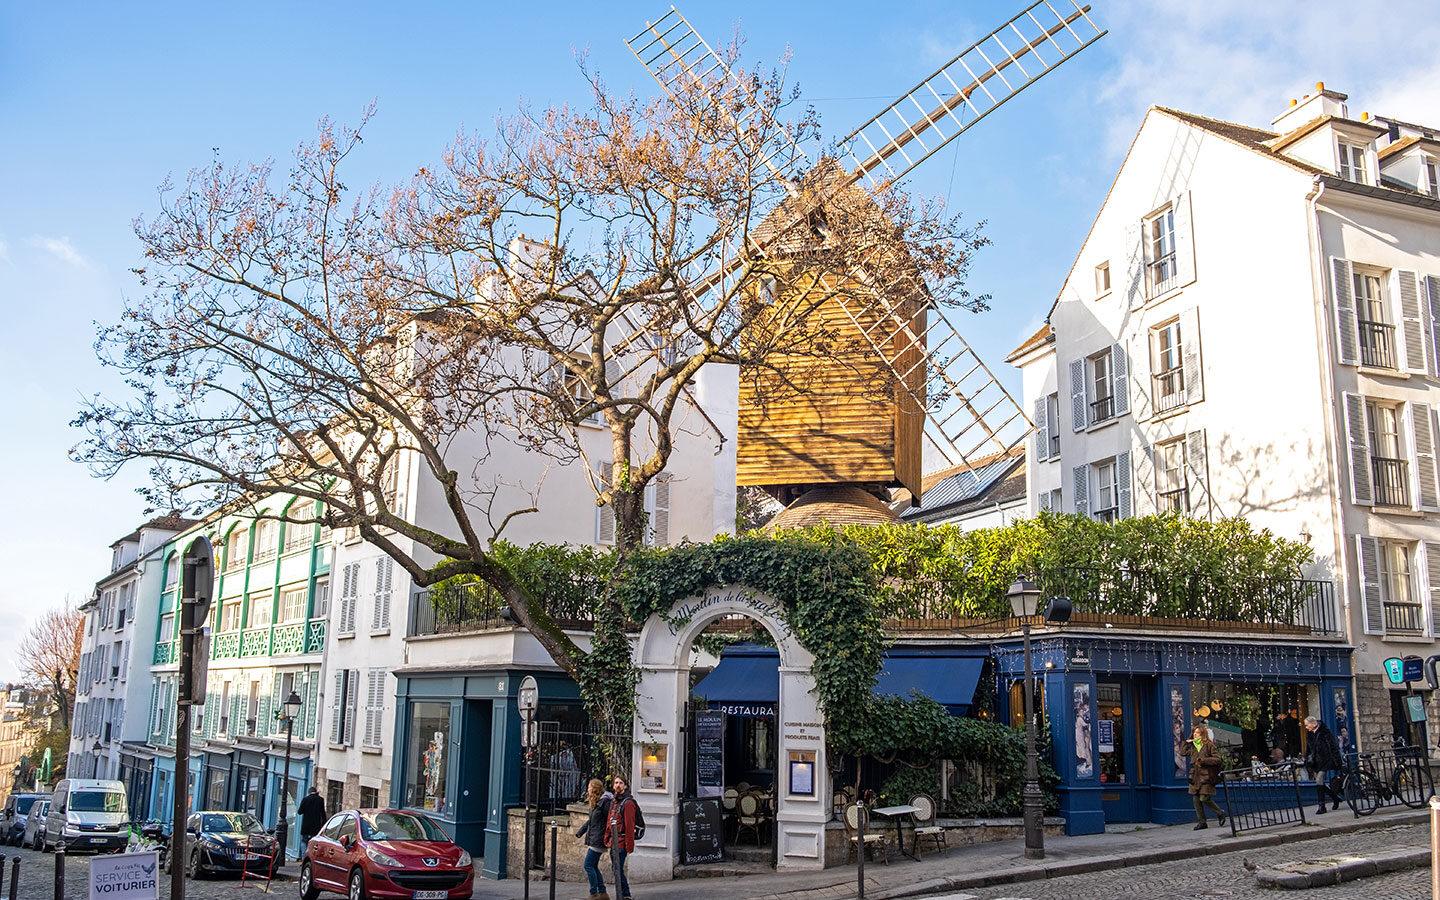 The Moulin de la Gallette restaurant on a self-guided walking tour of Montmartre, Paris